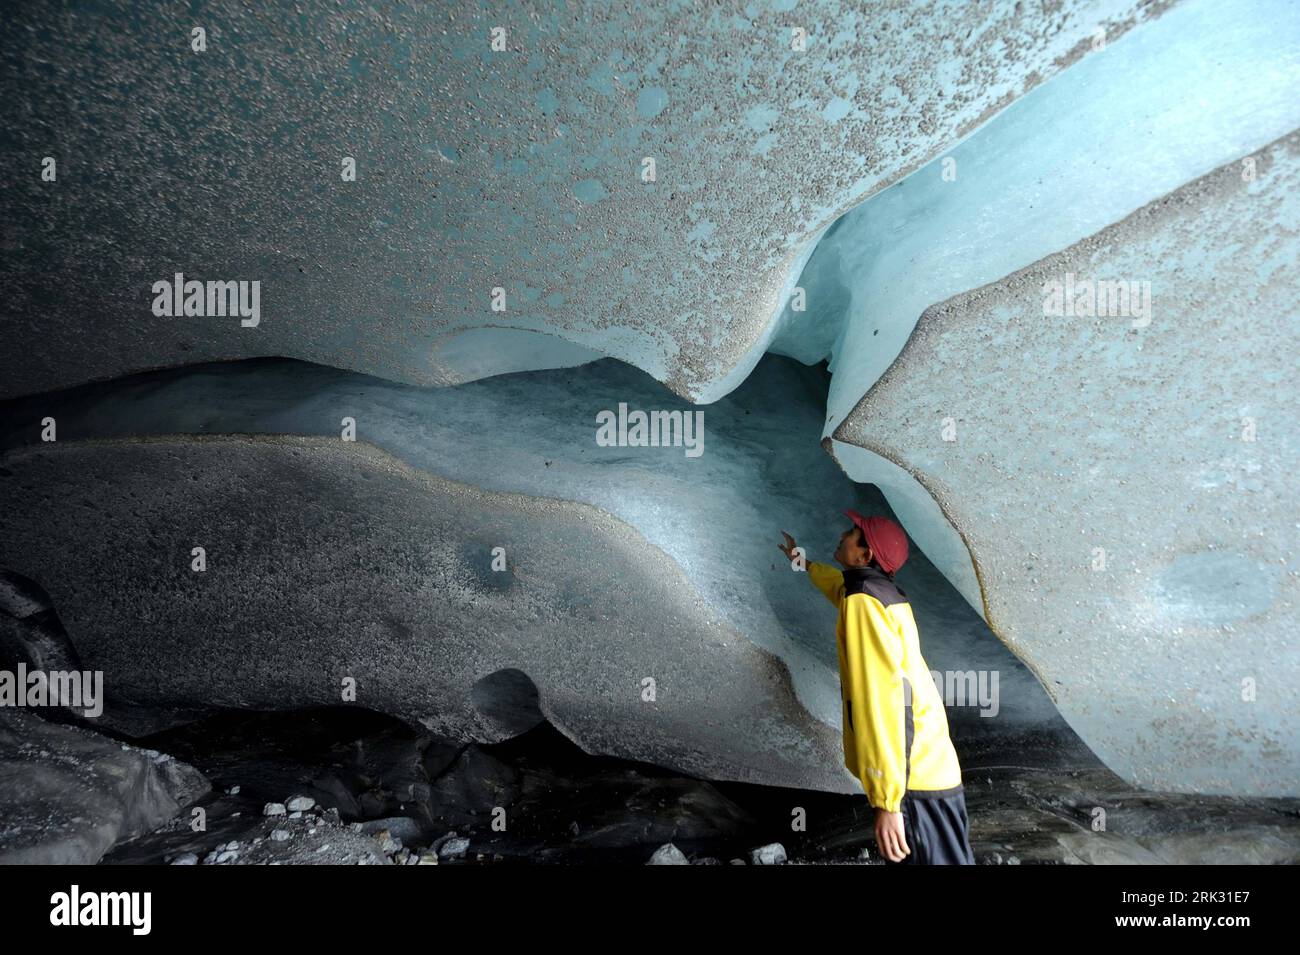 Bildnummer: 53286009 Datum: 25.08.2009 Copyright: imago/Xinhua (090825) -- KUNMING, 25. August 2009 (Xinhua) -- der Stab der Chinesischen Akademie von Sience beobachtet die Veränderungen der Höhle im Yulong-Schneeberg in Lijiang, Provinz Yunnan im Südwesten Chinas. Von der globalen Erwärmung betroffen, schmelzen die Gletscher des Yulong Snow Mountain in den letzten 20 Jahren mit einer beispiellosen Geschwindigkeit. Der Yulong Snow Mountain ist ein berühmter landschaftlicher Ort in China. Der schneebedeckte Berg hatte 13 Gipfel entlang des Gebirges, 35 Kilometer breit, darunter 19 Gletscher. Die sich abzeichnende Krise wurde durch den dramatischen Rückgang deutlich Stockfoto